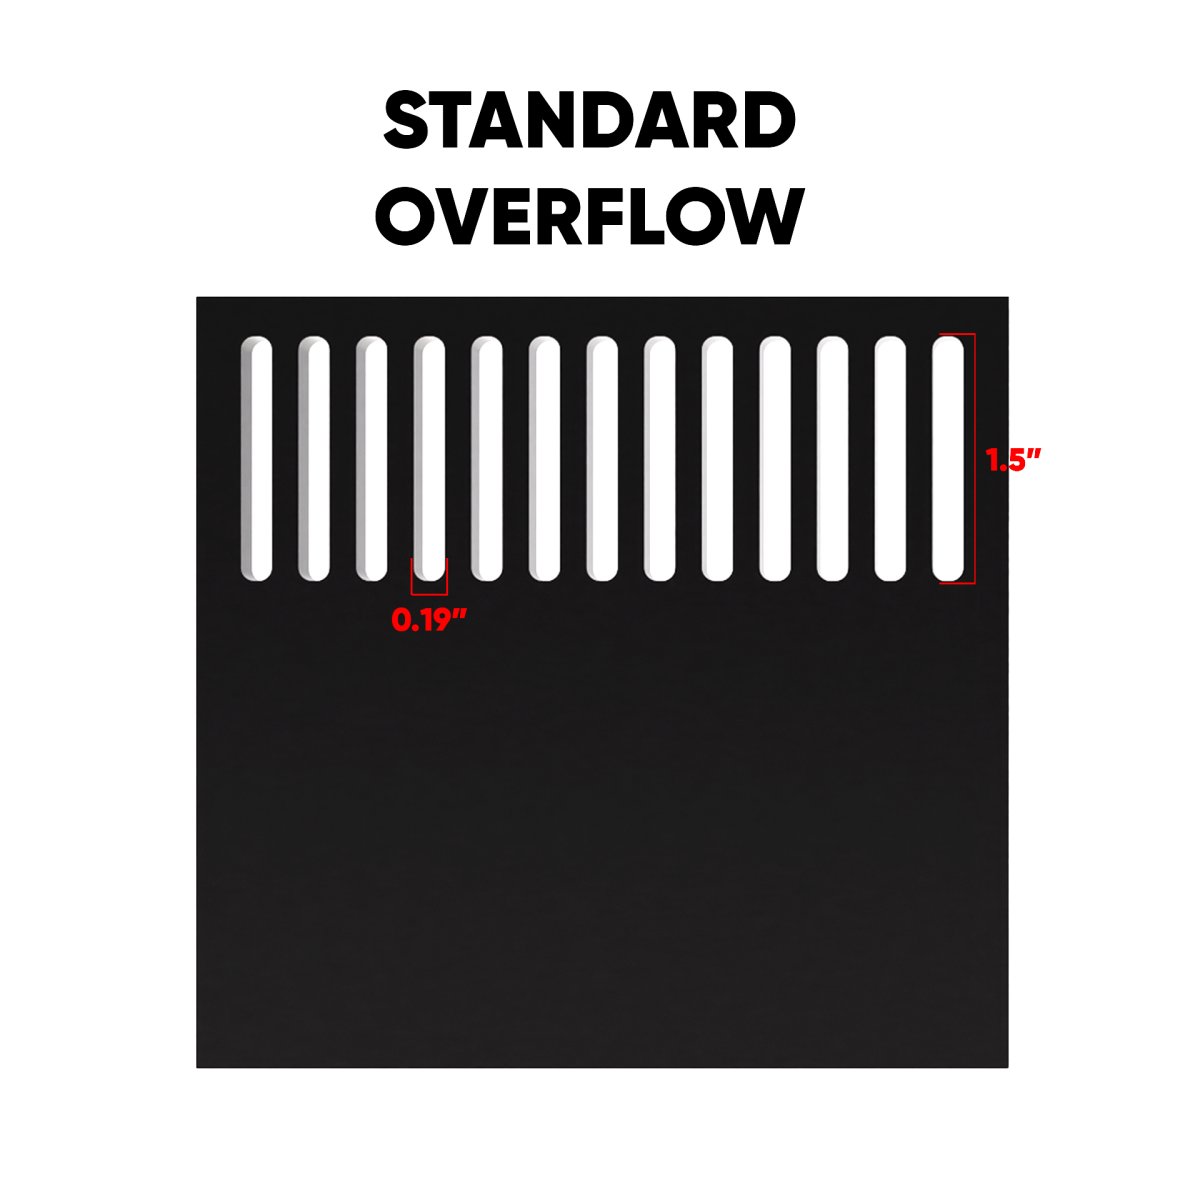 Overflow Standard Weir.jpg